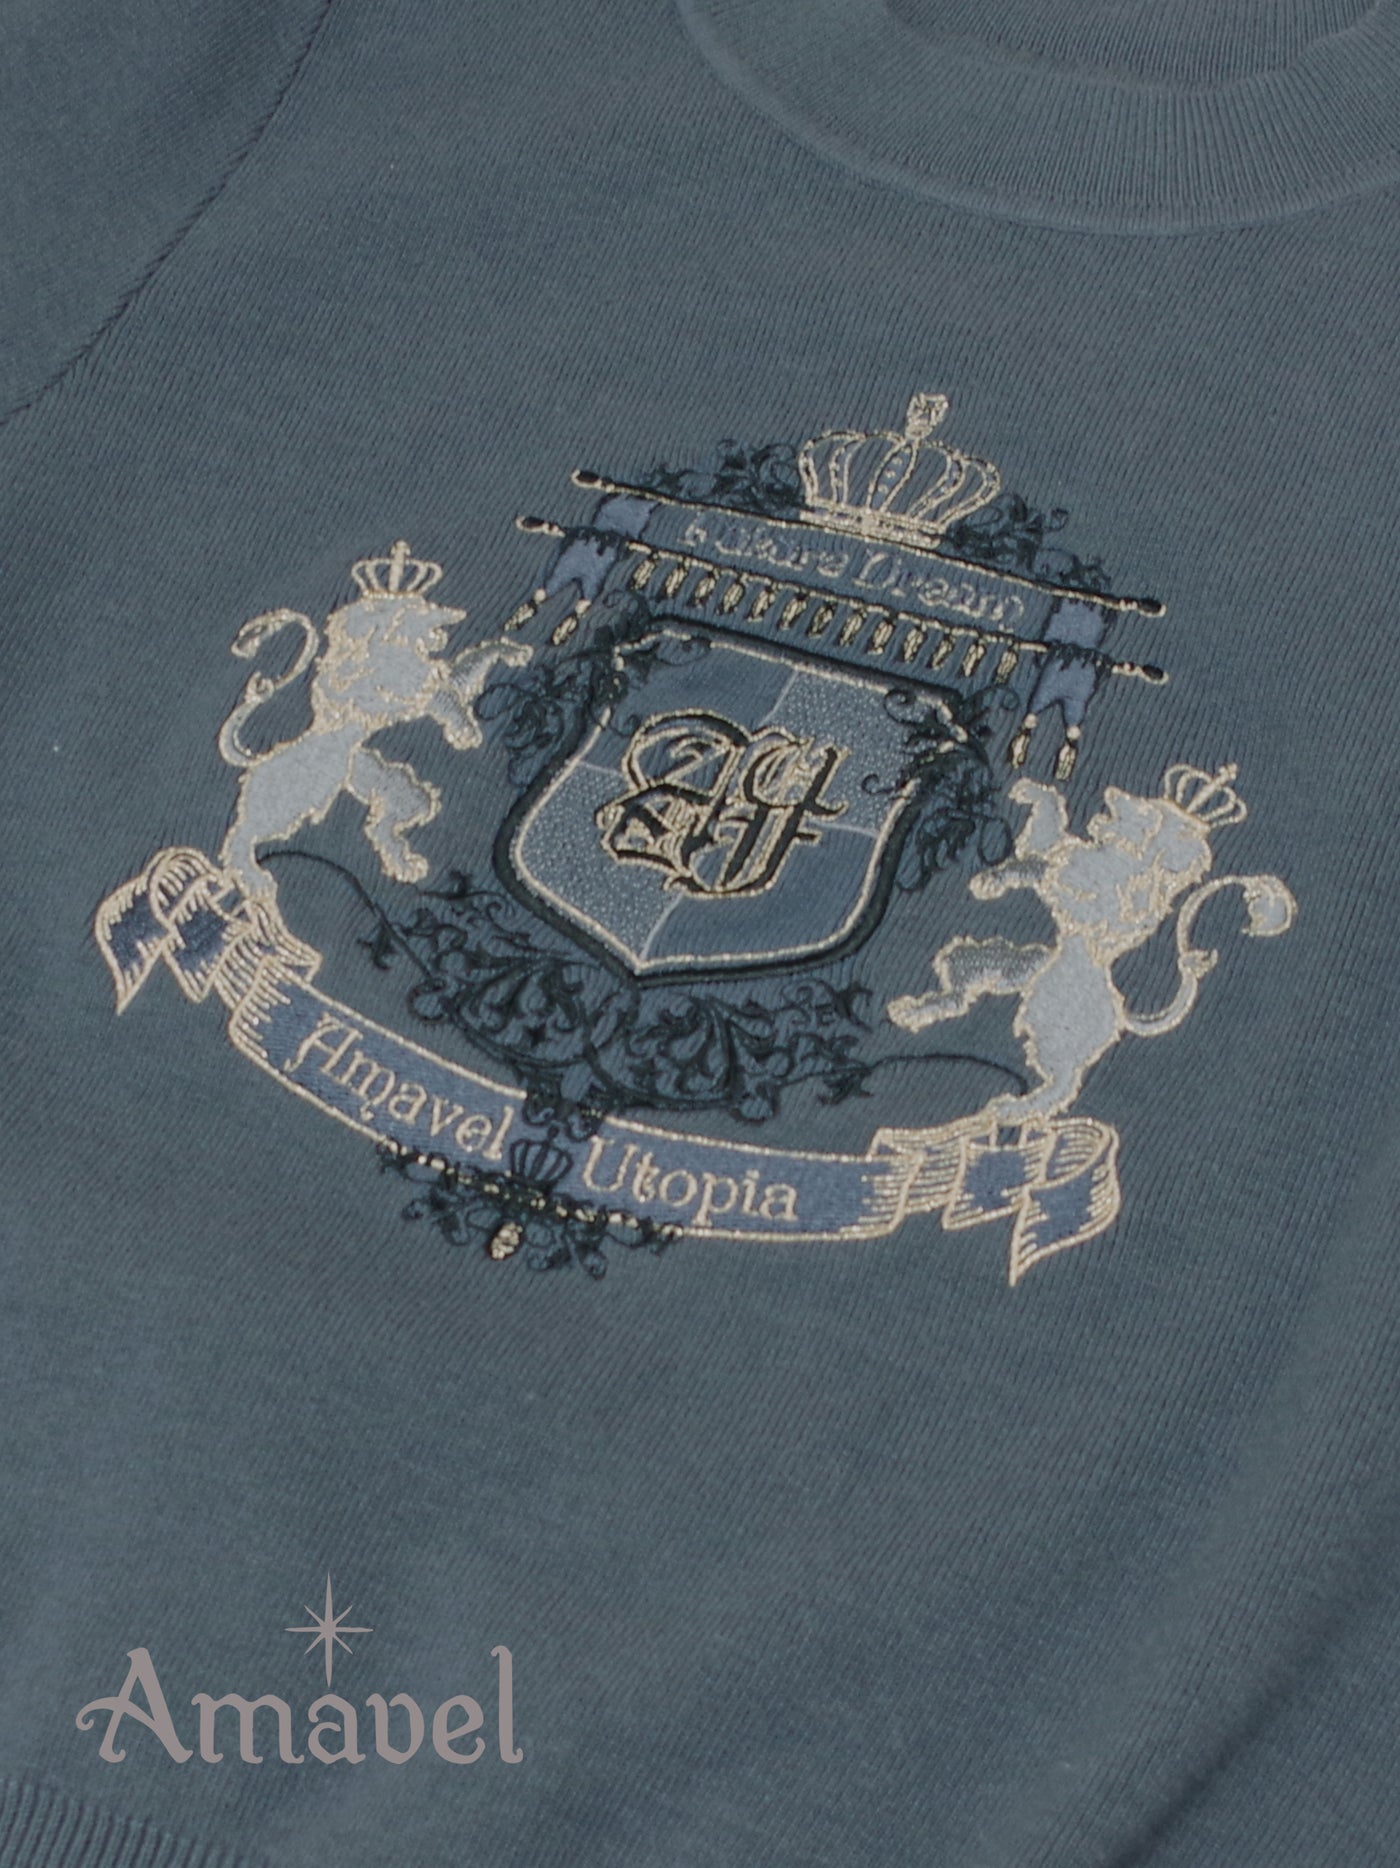 Noble Lion Emblem knit tops